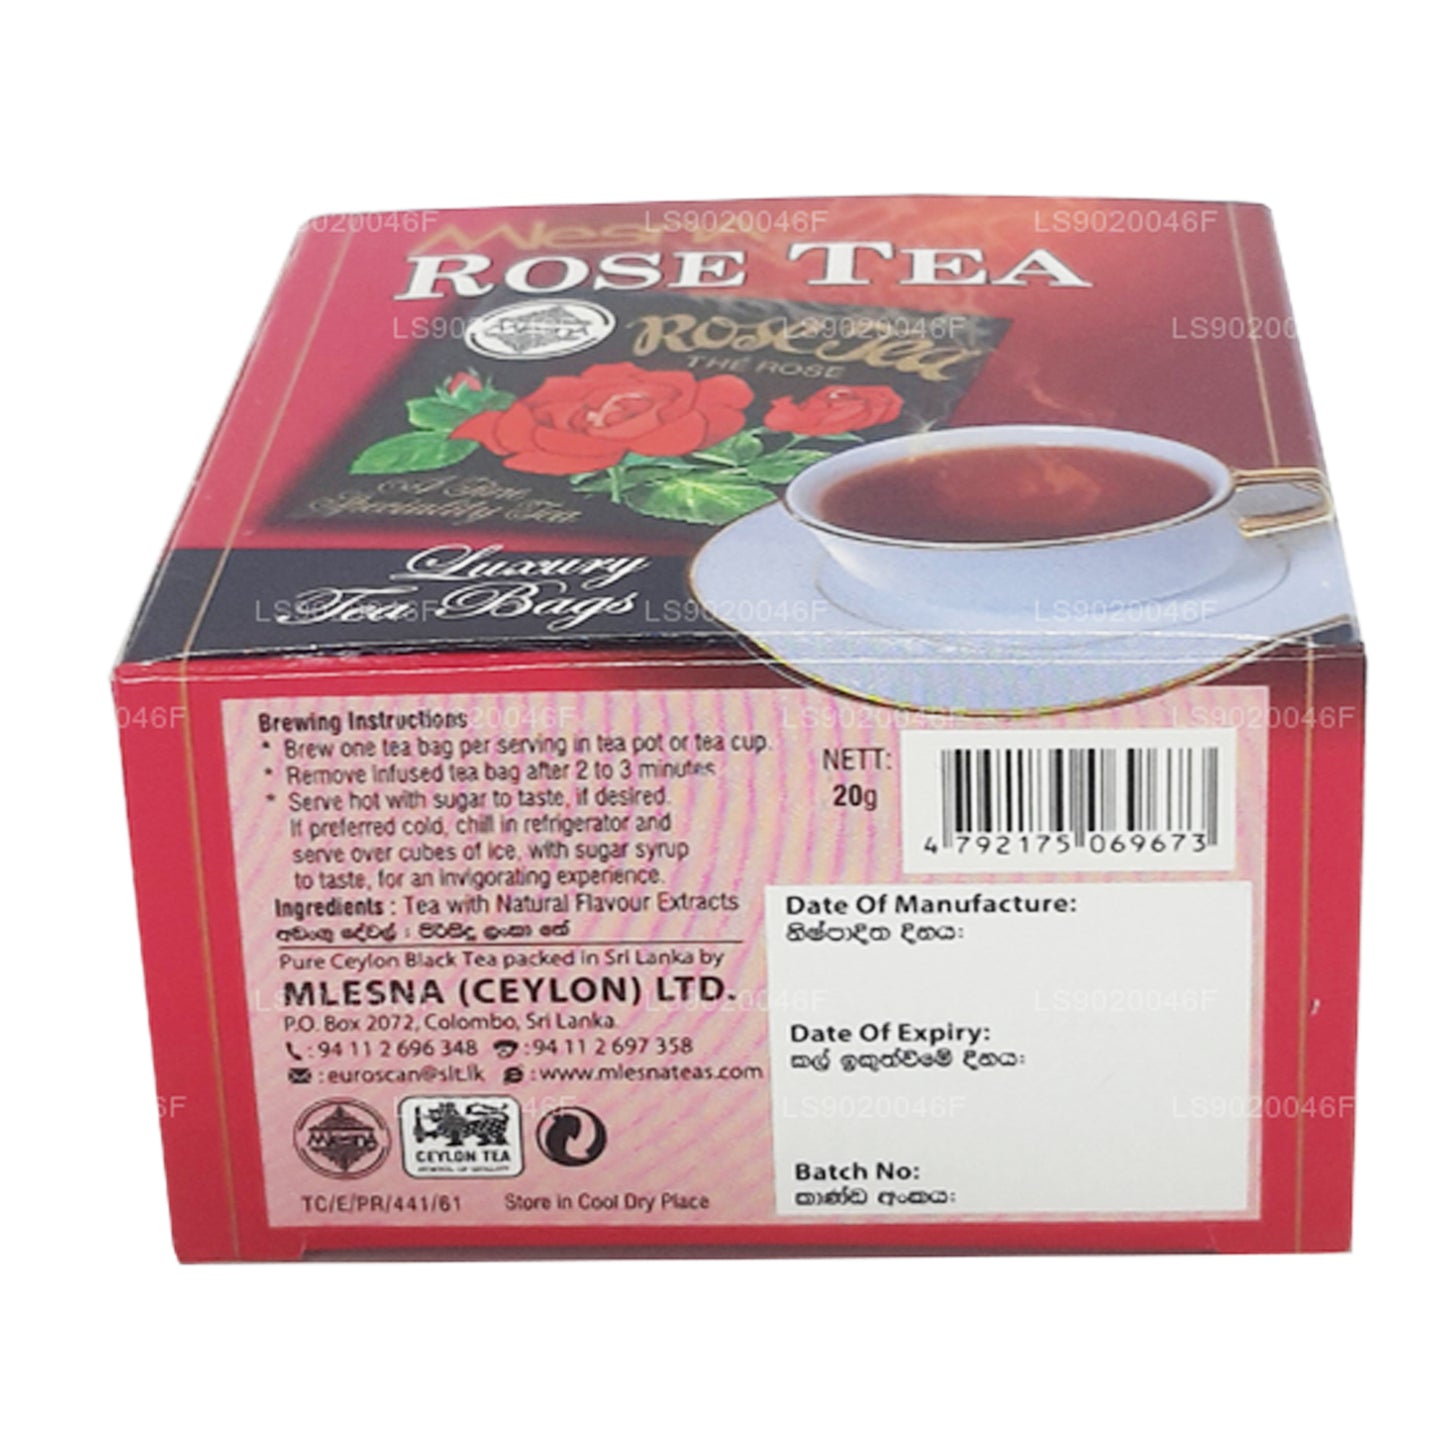 Mlesna Herbata różana (20g) 10 luksusowych torebek herbaty